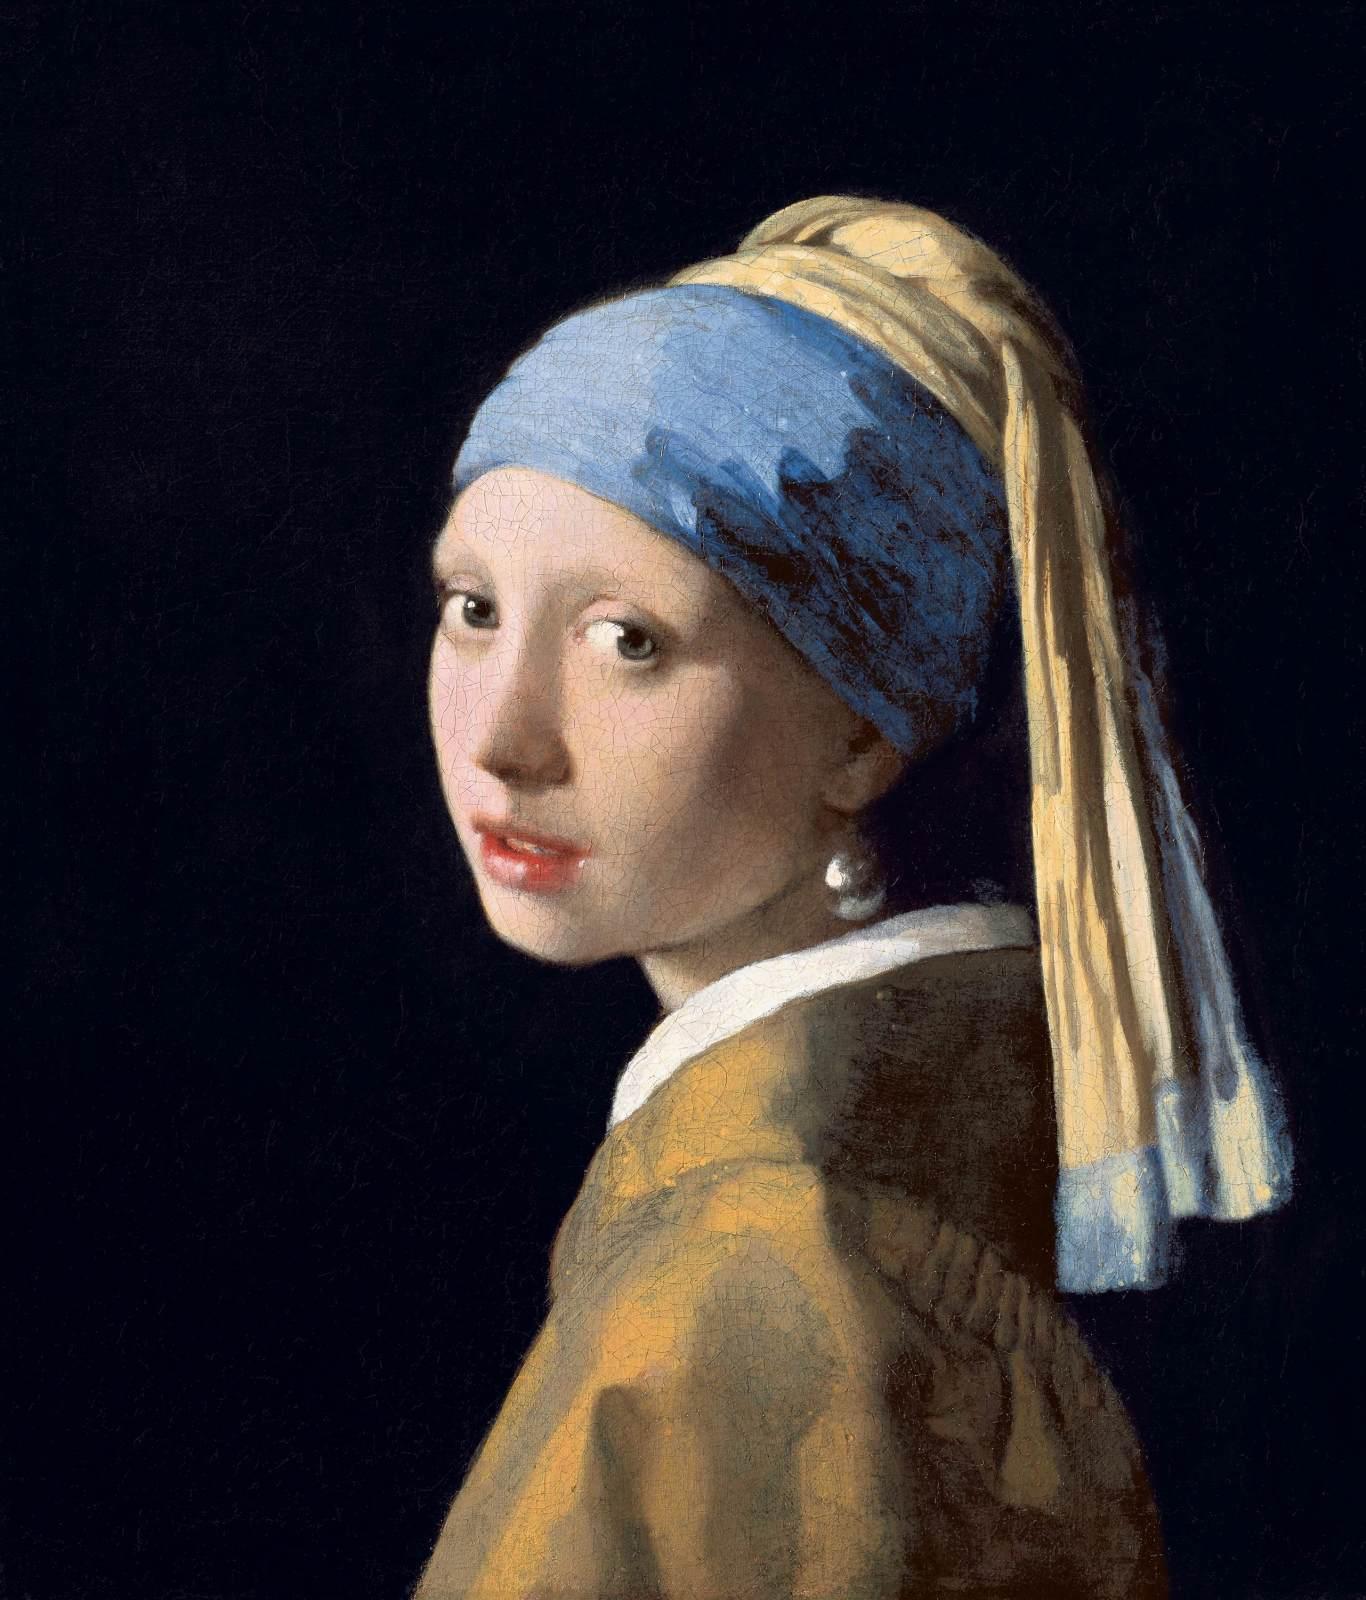 世界最著名四十副油画之伊丽莎白·路易丝·维瑞《画家与女儿像》 - 金玉米 | 专注热门资讯视频